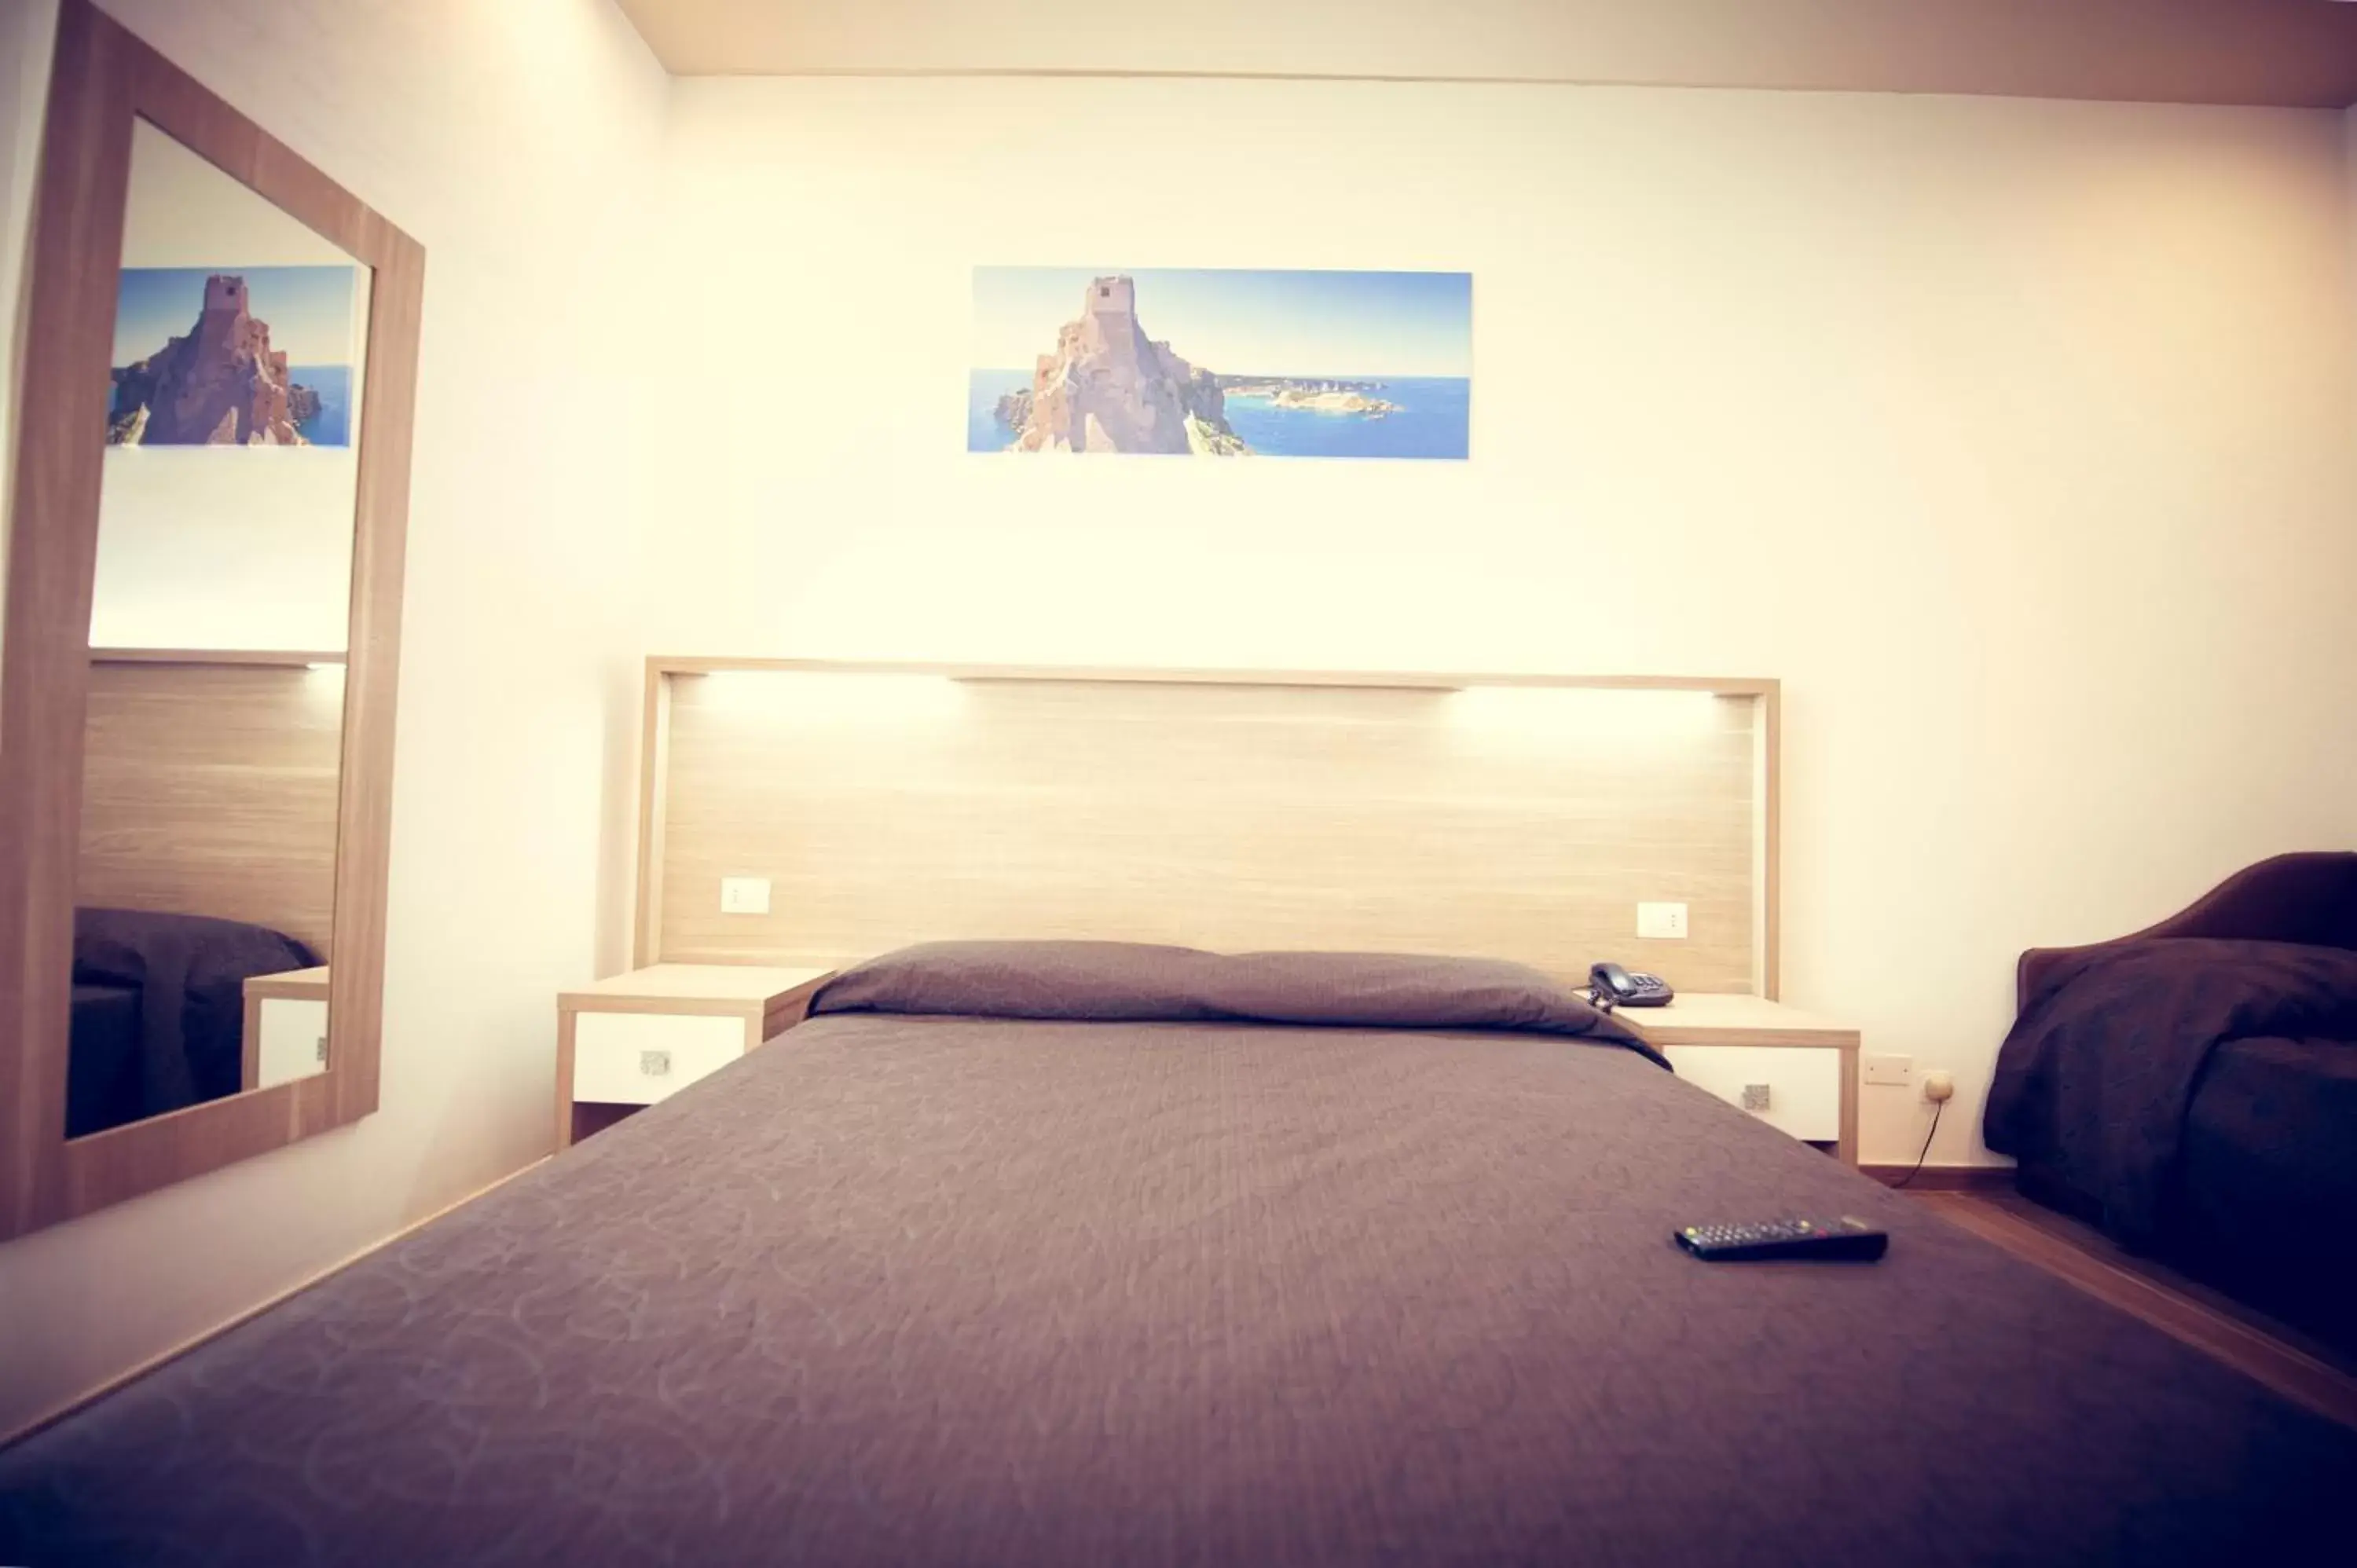 Bedroom, Room Photo in Hotel Fini